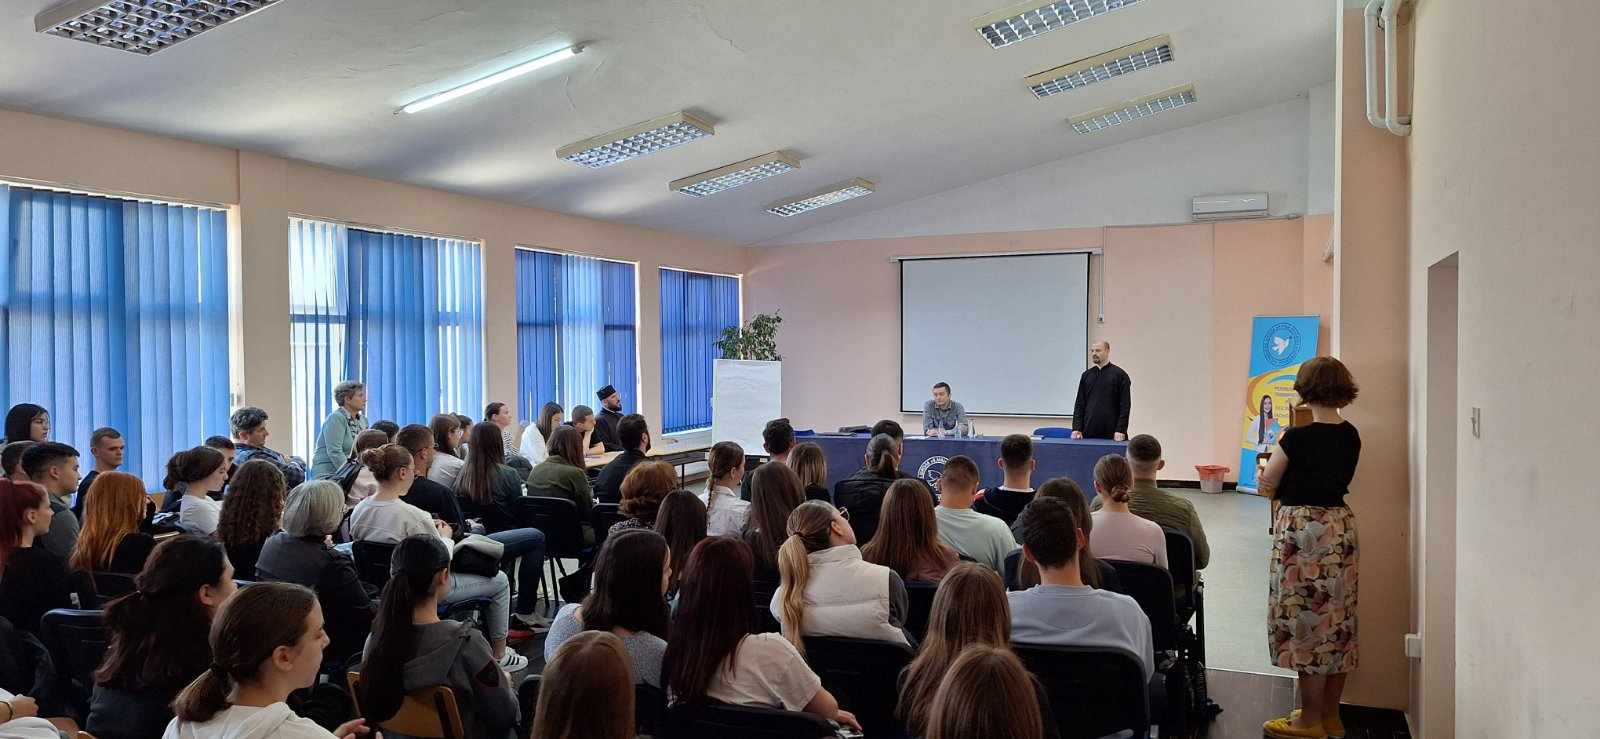 Одржано предавање у Сремској Митровици на тему „Васкрсење – радост живота“